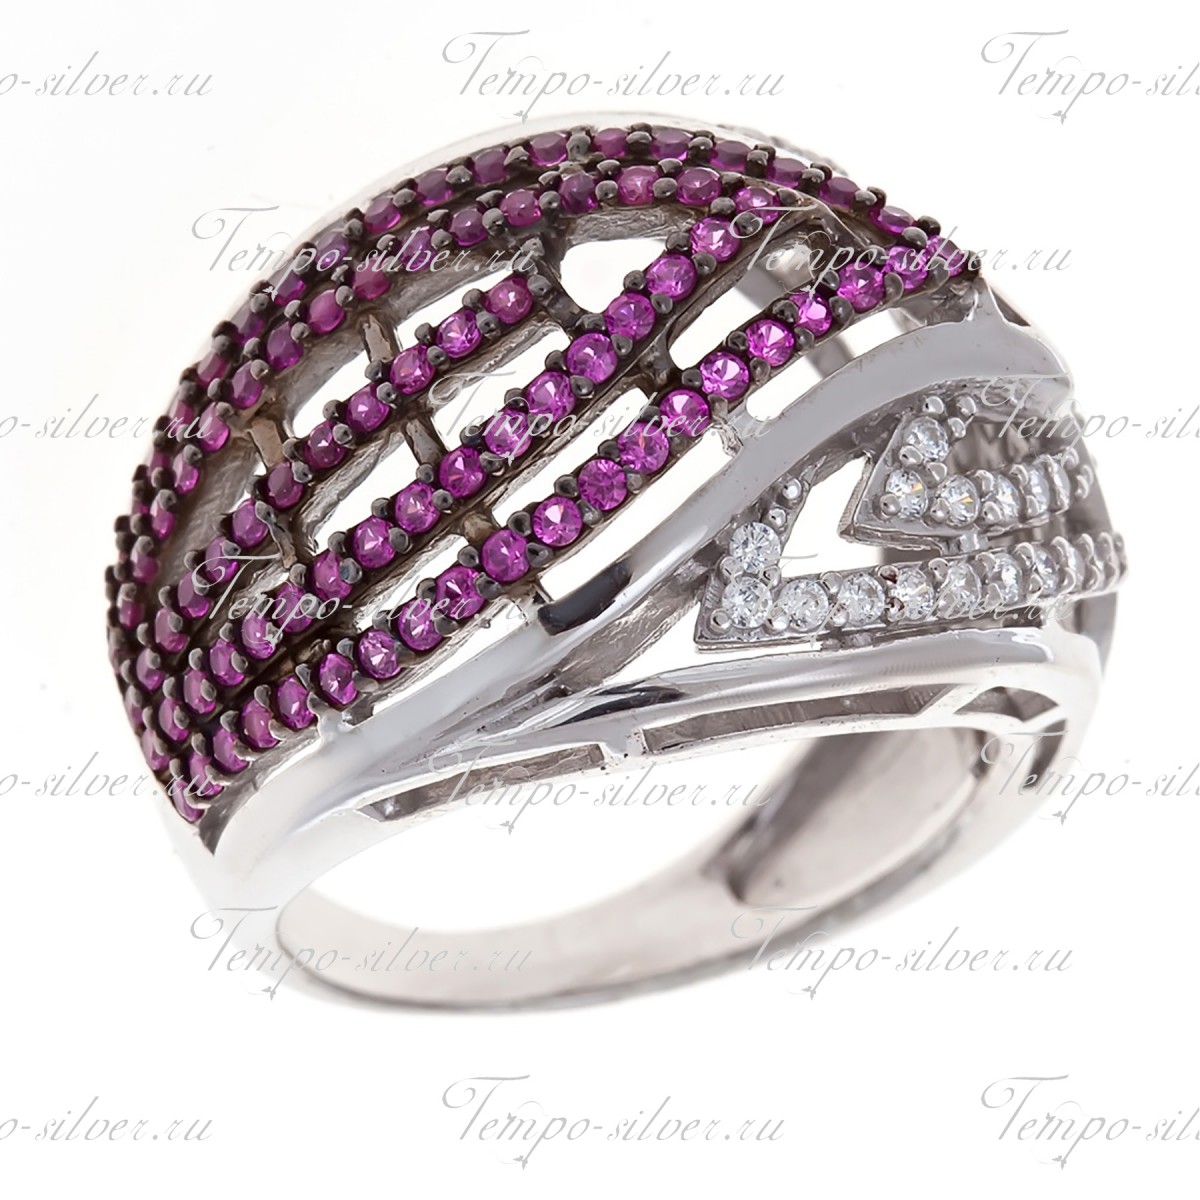 Кольцо обручального типа из серебра с кривыми линиями из белых и розовых камней.